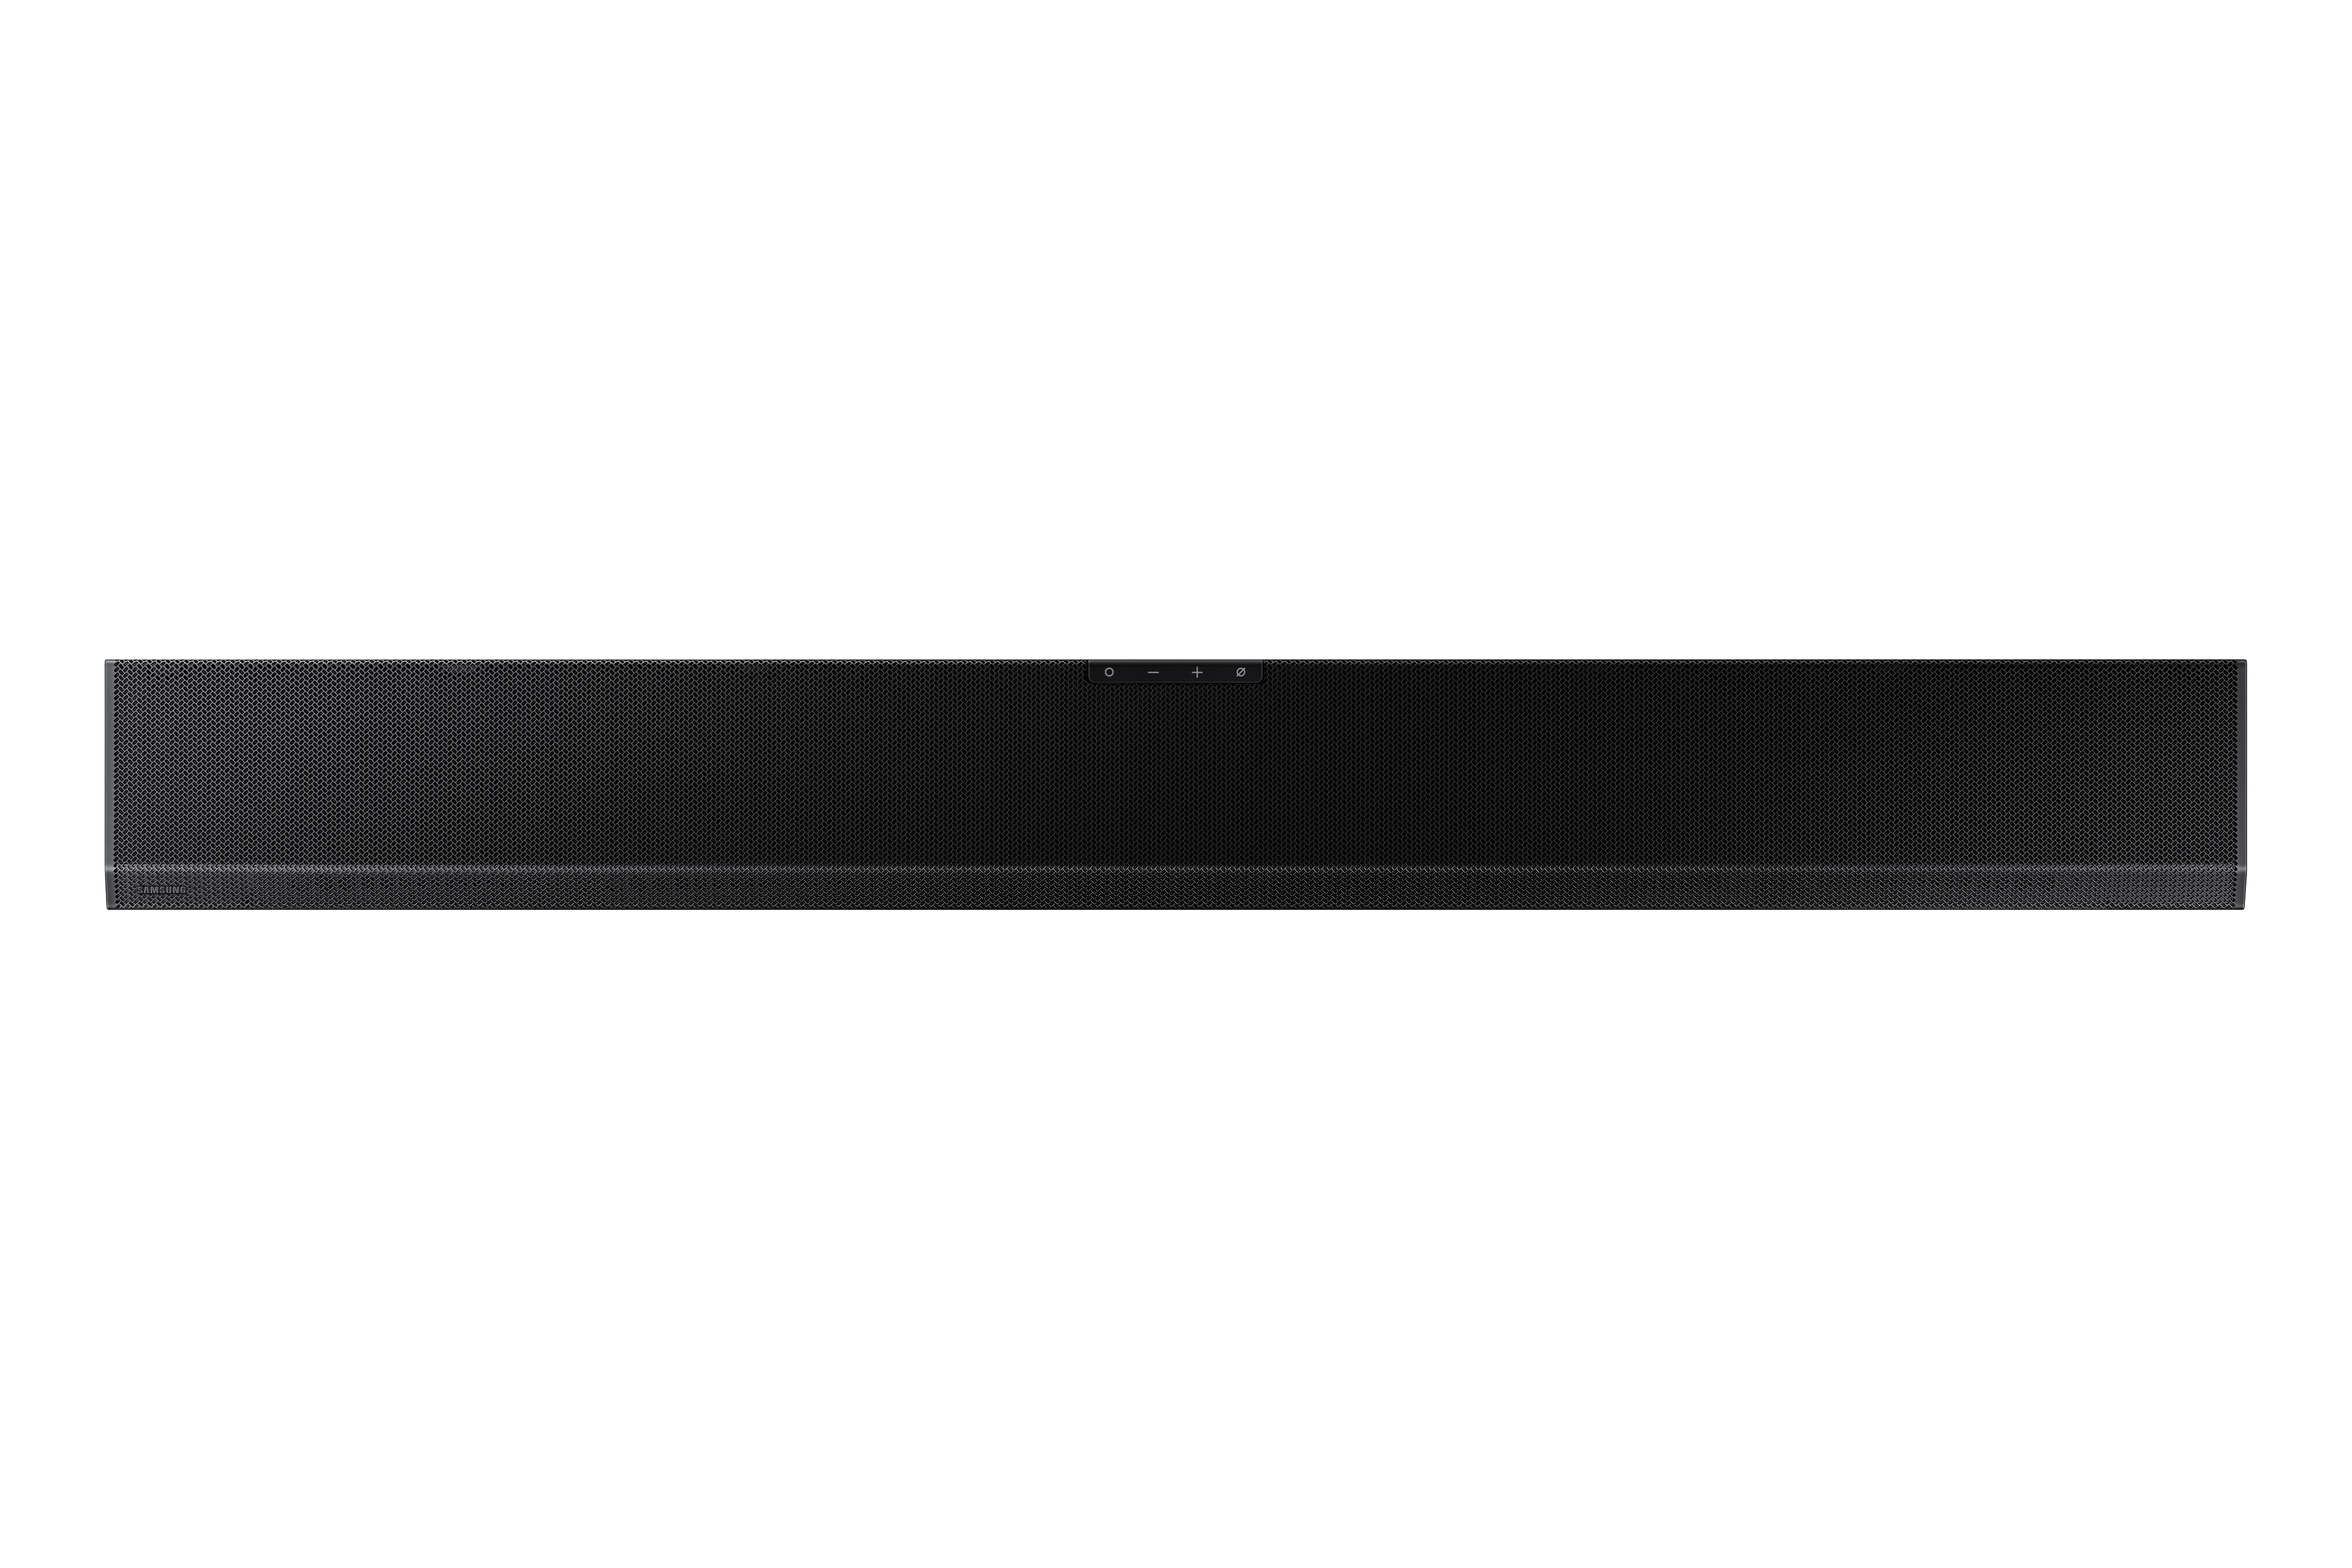 Altoparlante soundbar Samsung HW-Q800A Nero 3.1.2 canali [HW-Q800A/ZF]